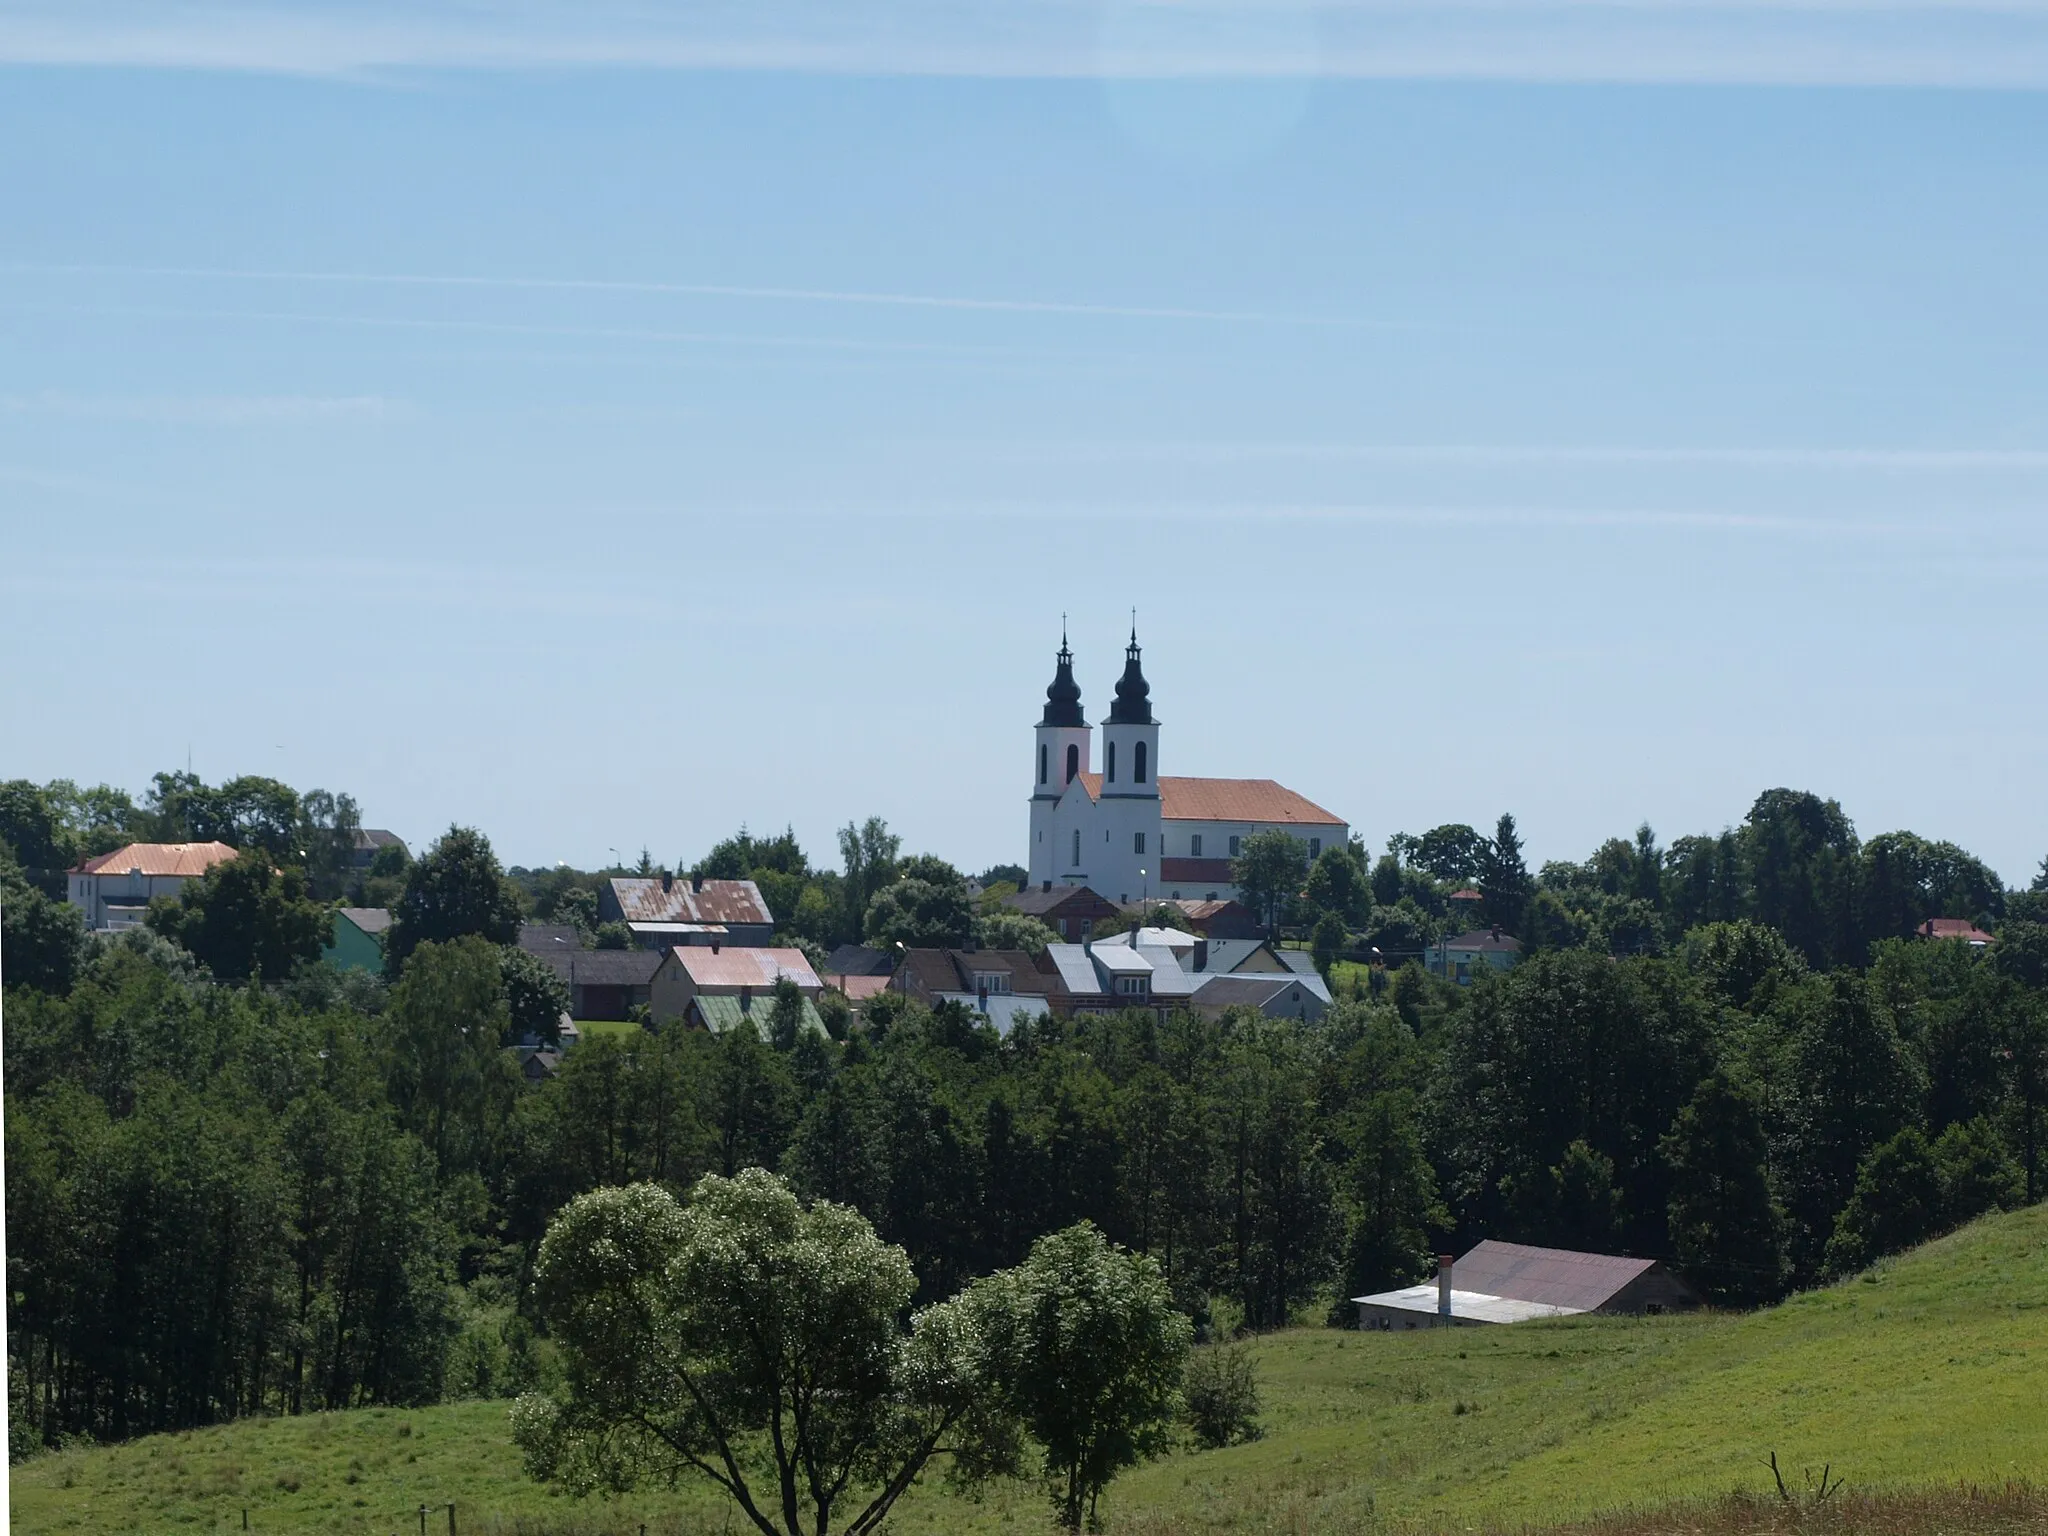 Photo showing: Widok na wieś Bakałarzewo (pow. suwalski, gm. Bakałarzewo) ze wzniesienia z bunkrem pod wsią. Widoczny jest zabytkowy kościół pw. św. Jakuba Apostoła.